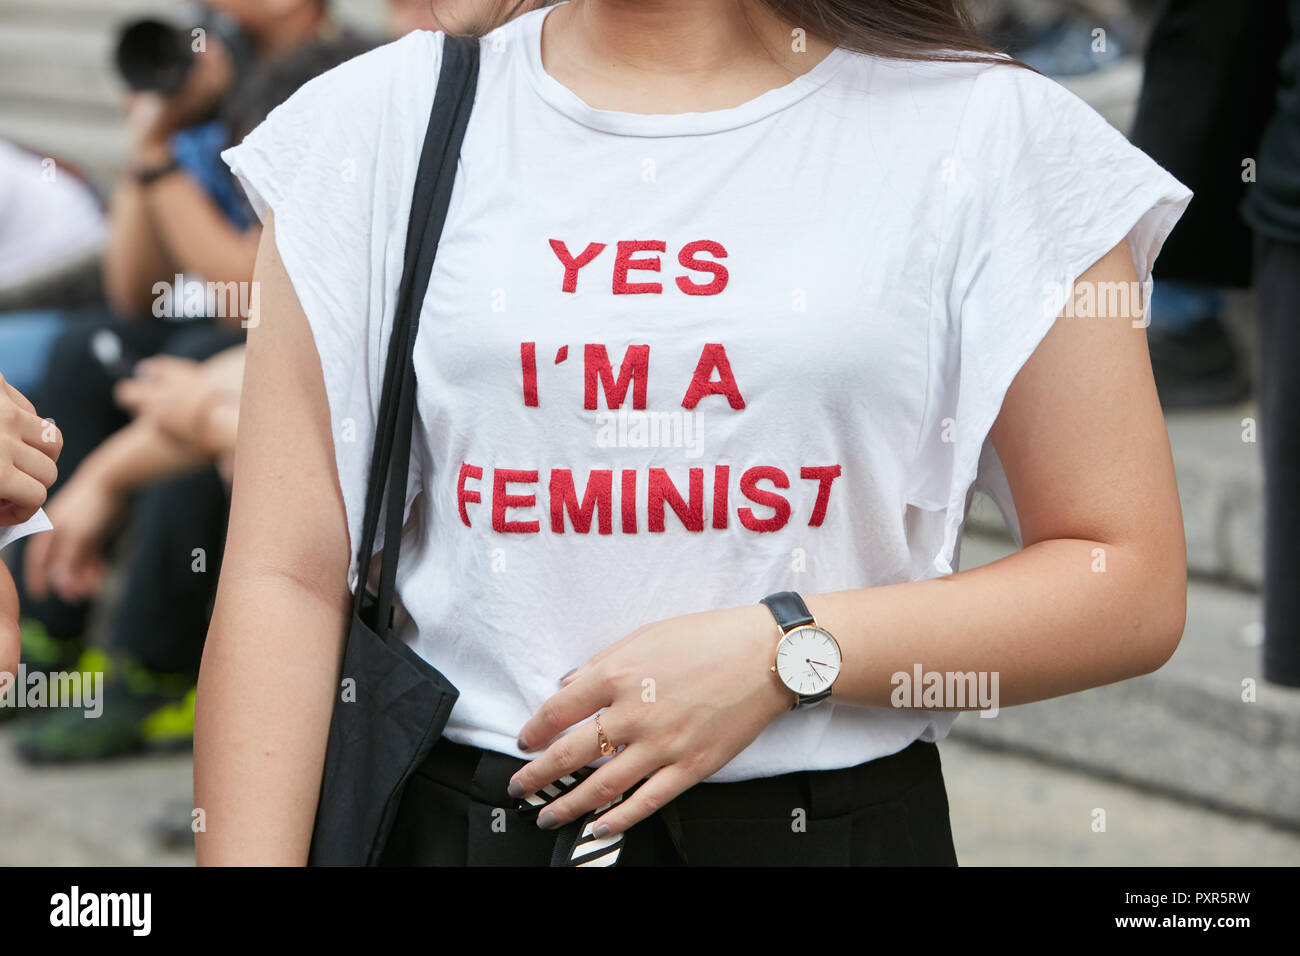 Milán, Italia 22 de septiembre 2018: Mujer con camisa blanca con red feminista de escritura antes de Salvatore Ferragamo Fashion Show, calle de Semana de la moda de Milán